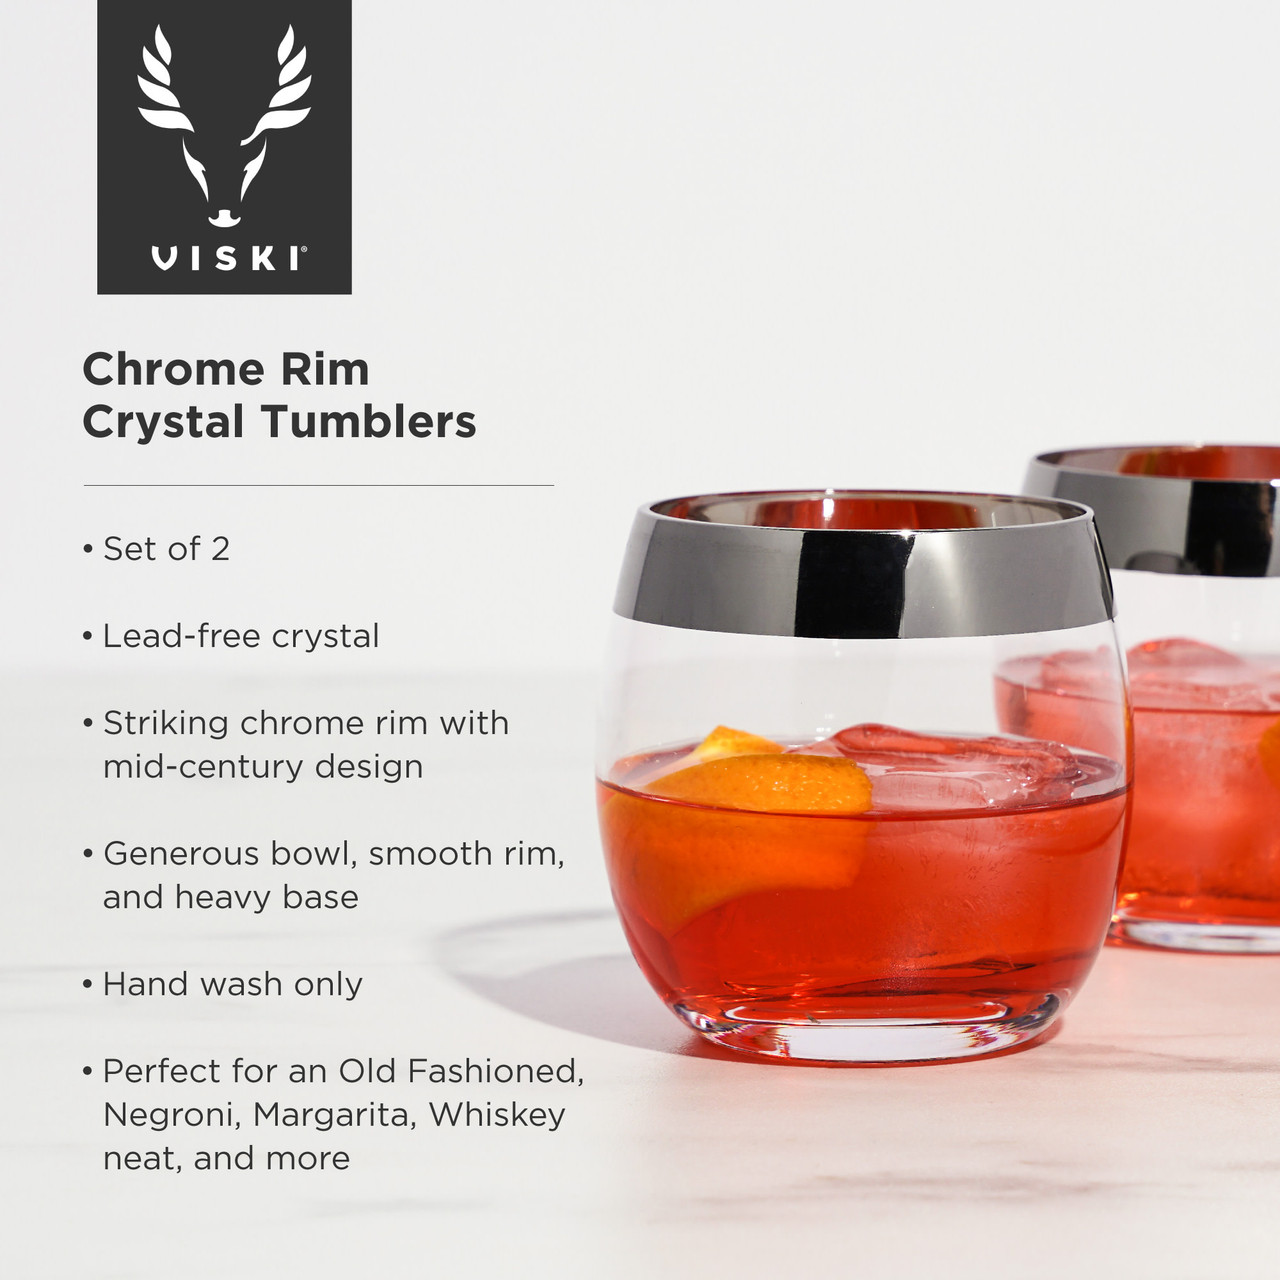 Chrome Rim Crystal Tumblers by Viski®